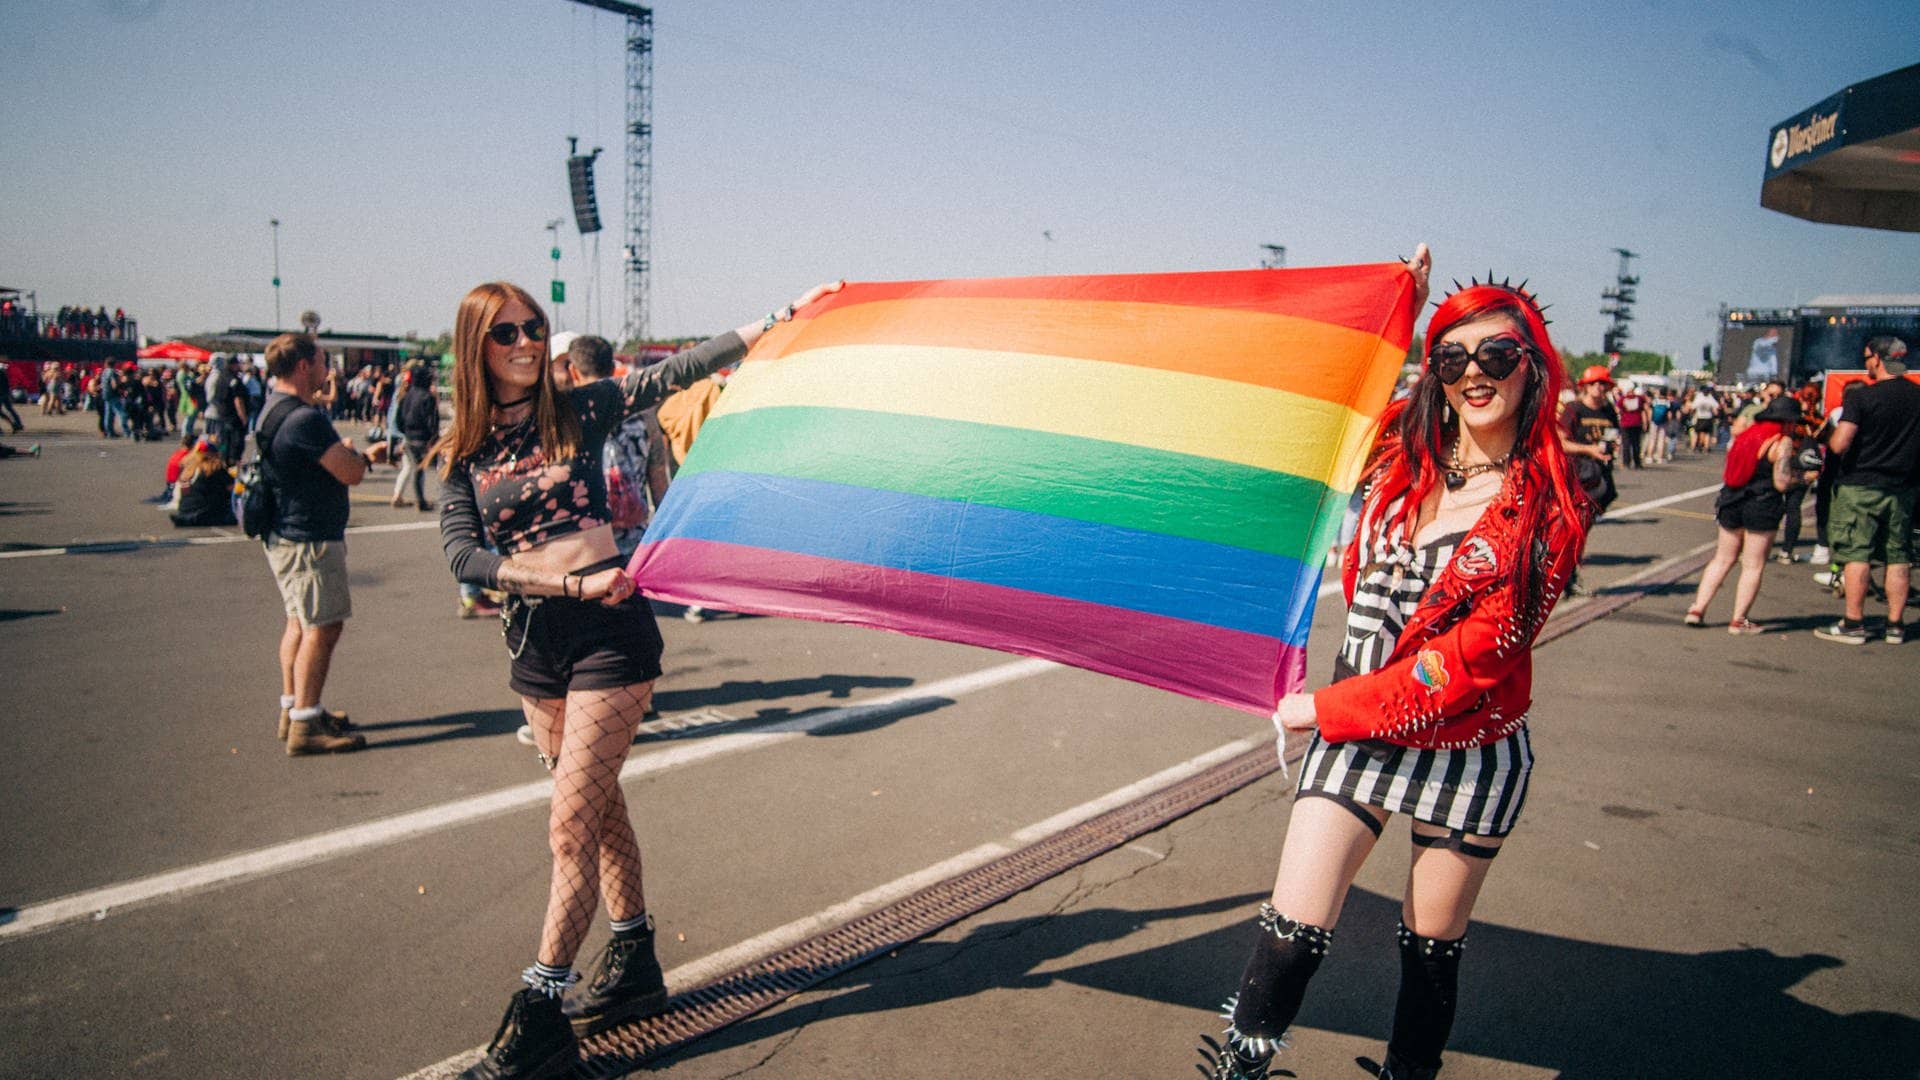 Zwei junge Frauen laufen auf dem Gelände von Rock am Ring herum und tragen zwischen sich eine Regenbogenflagge